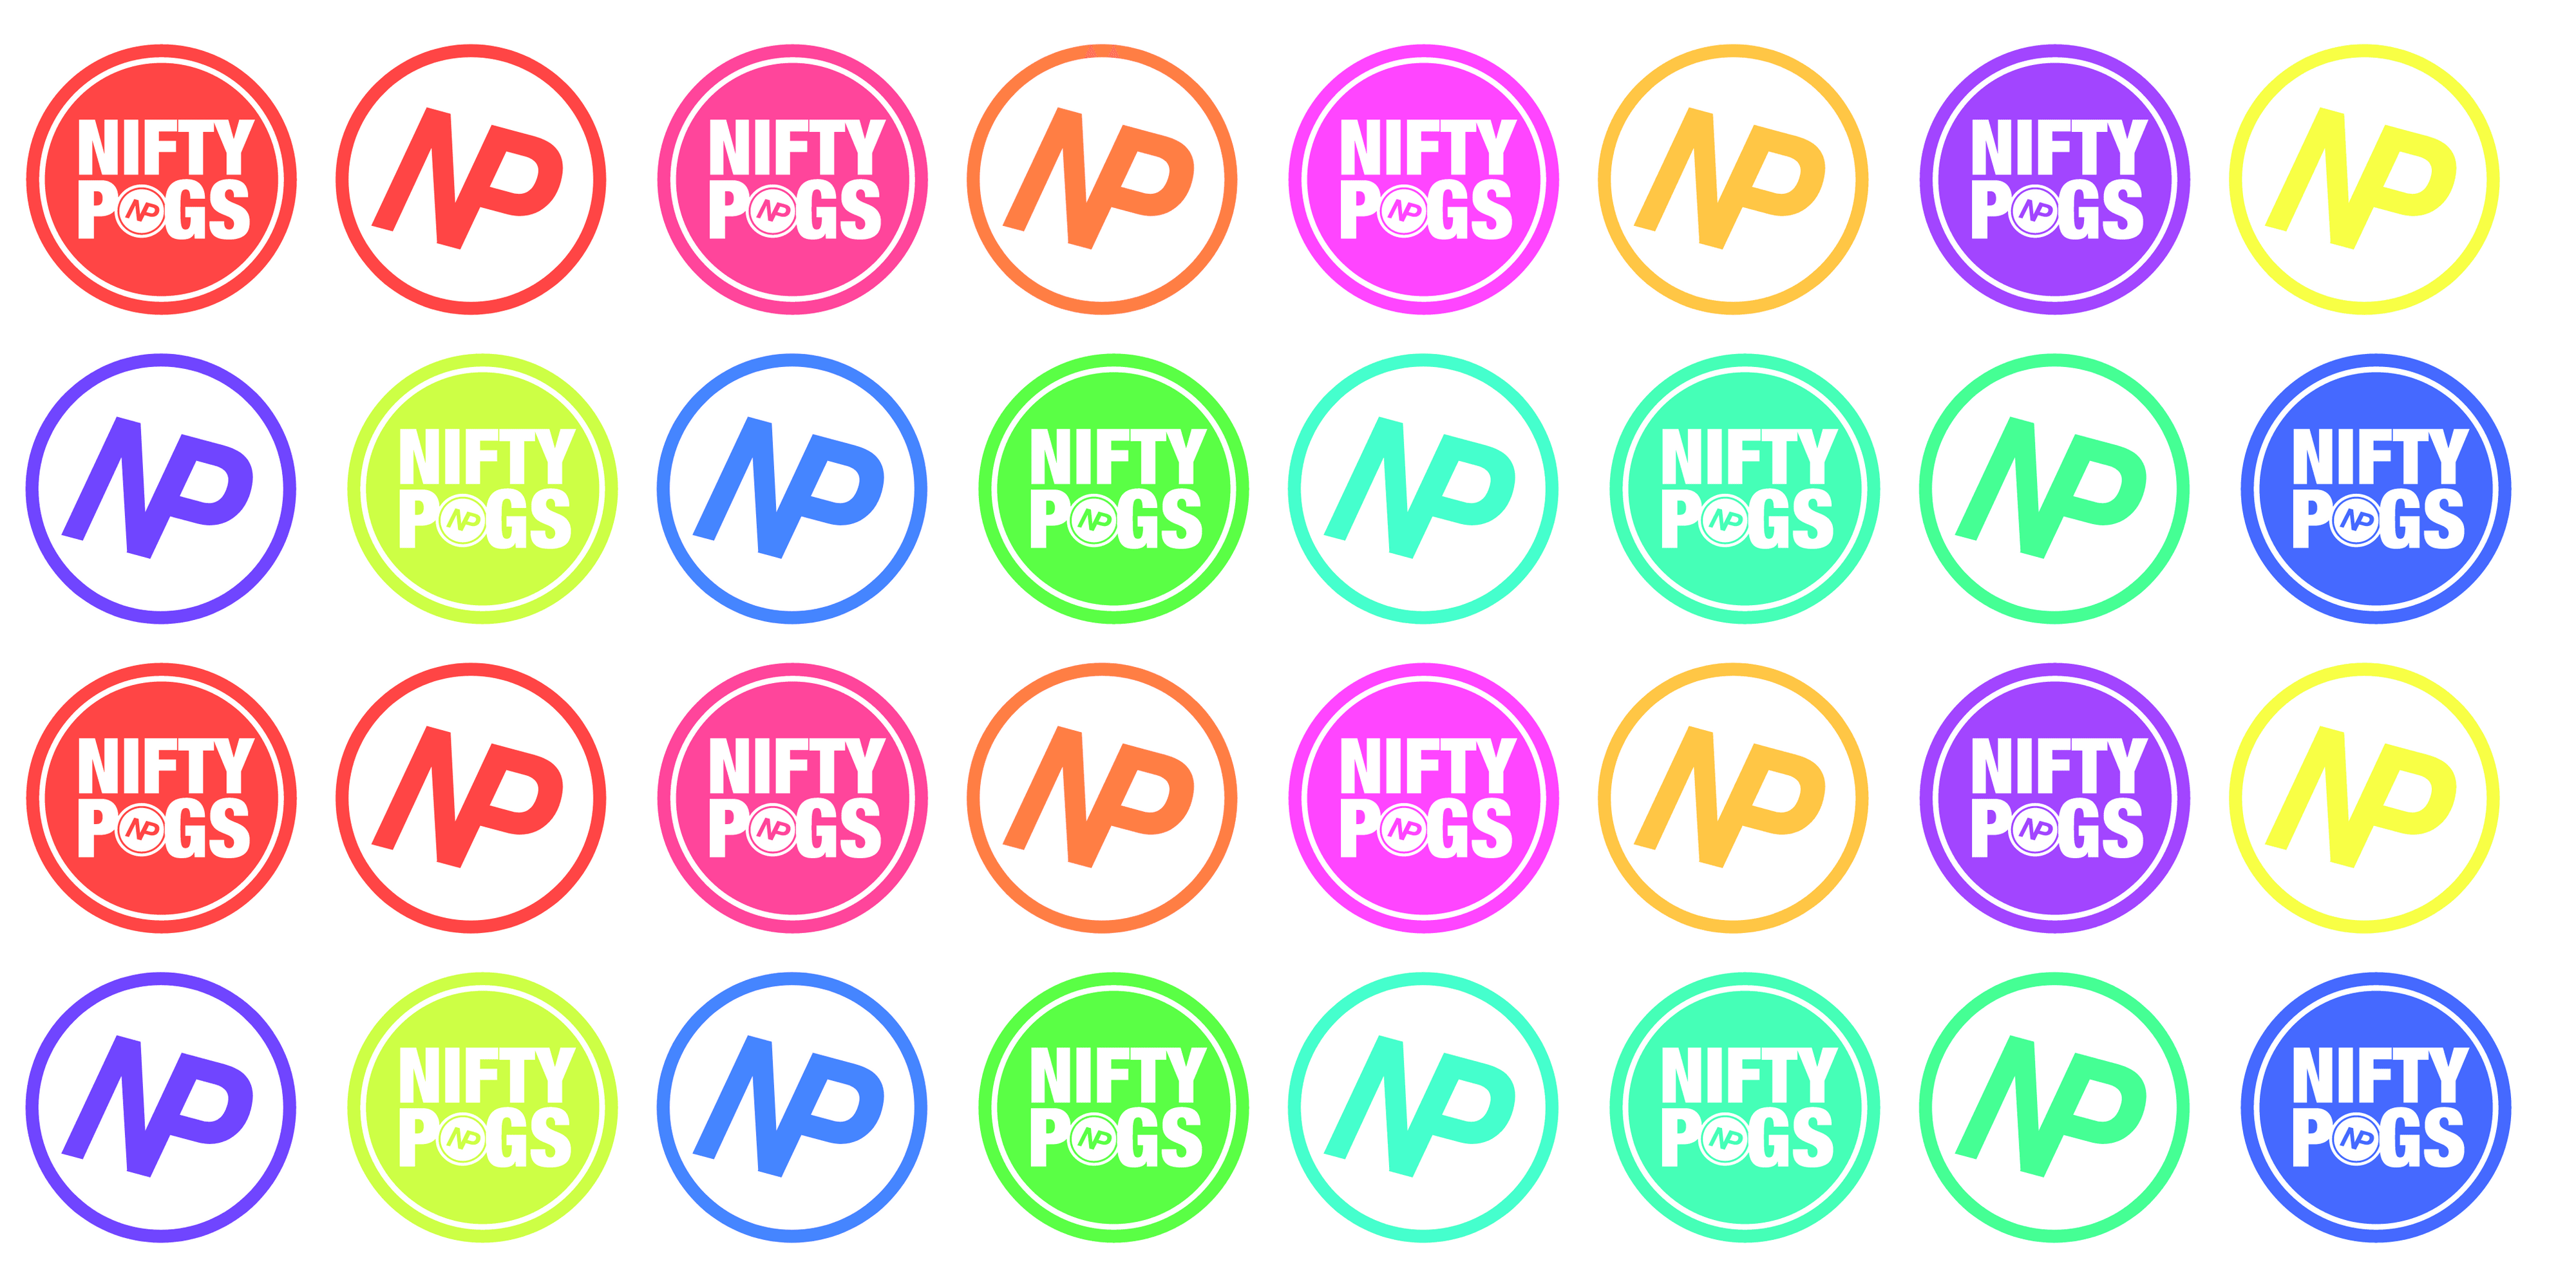 NiftyPogs bannière